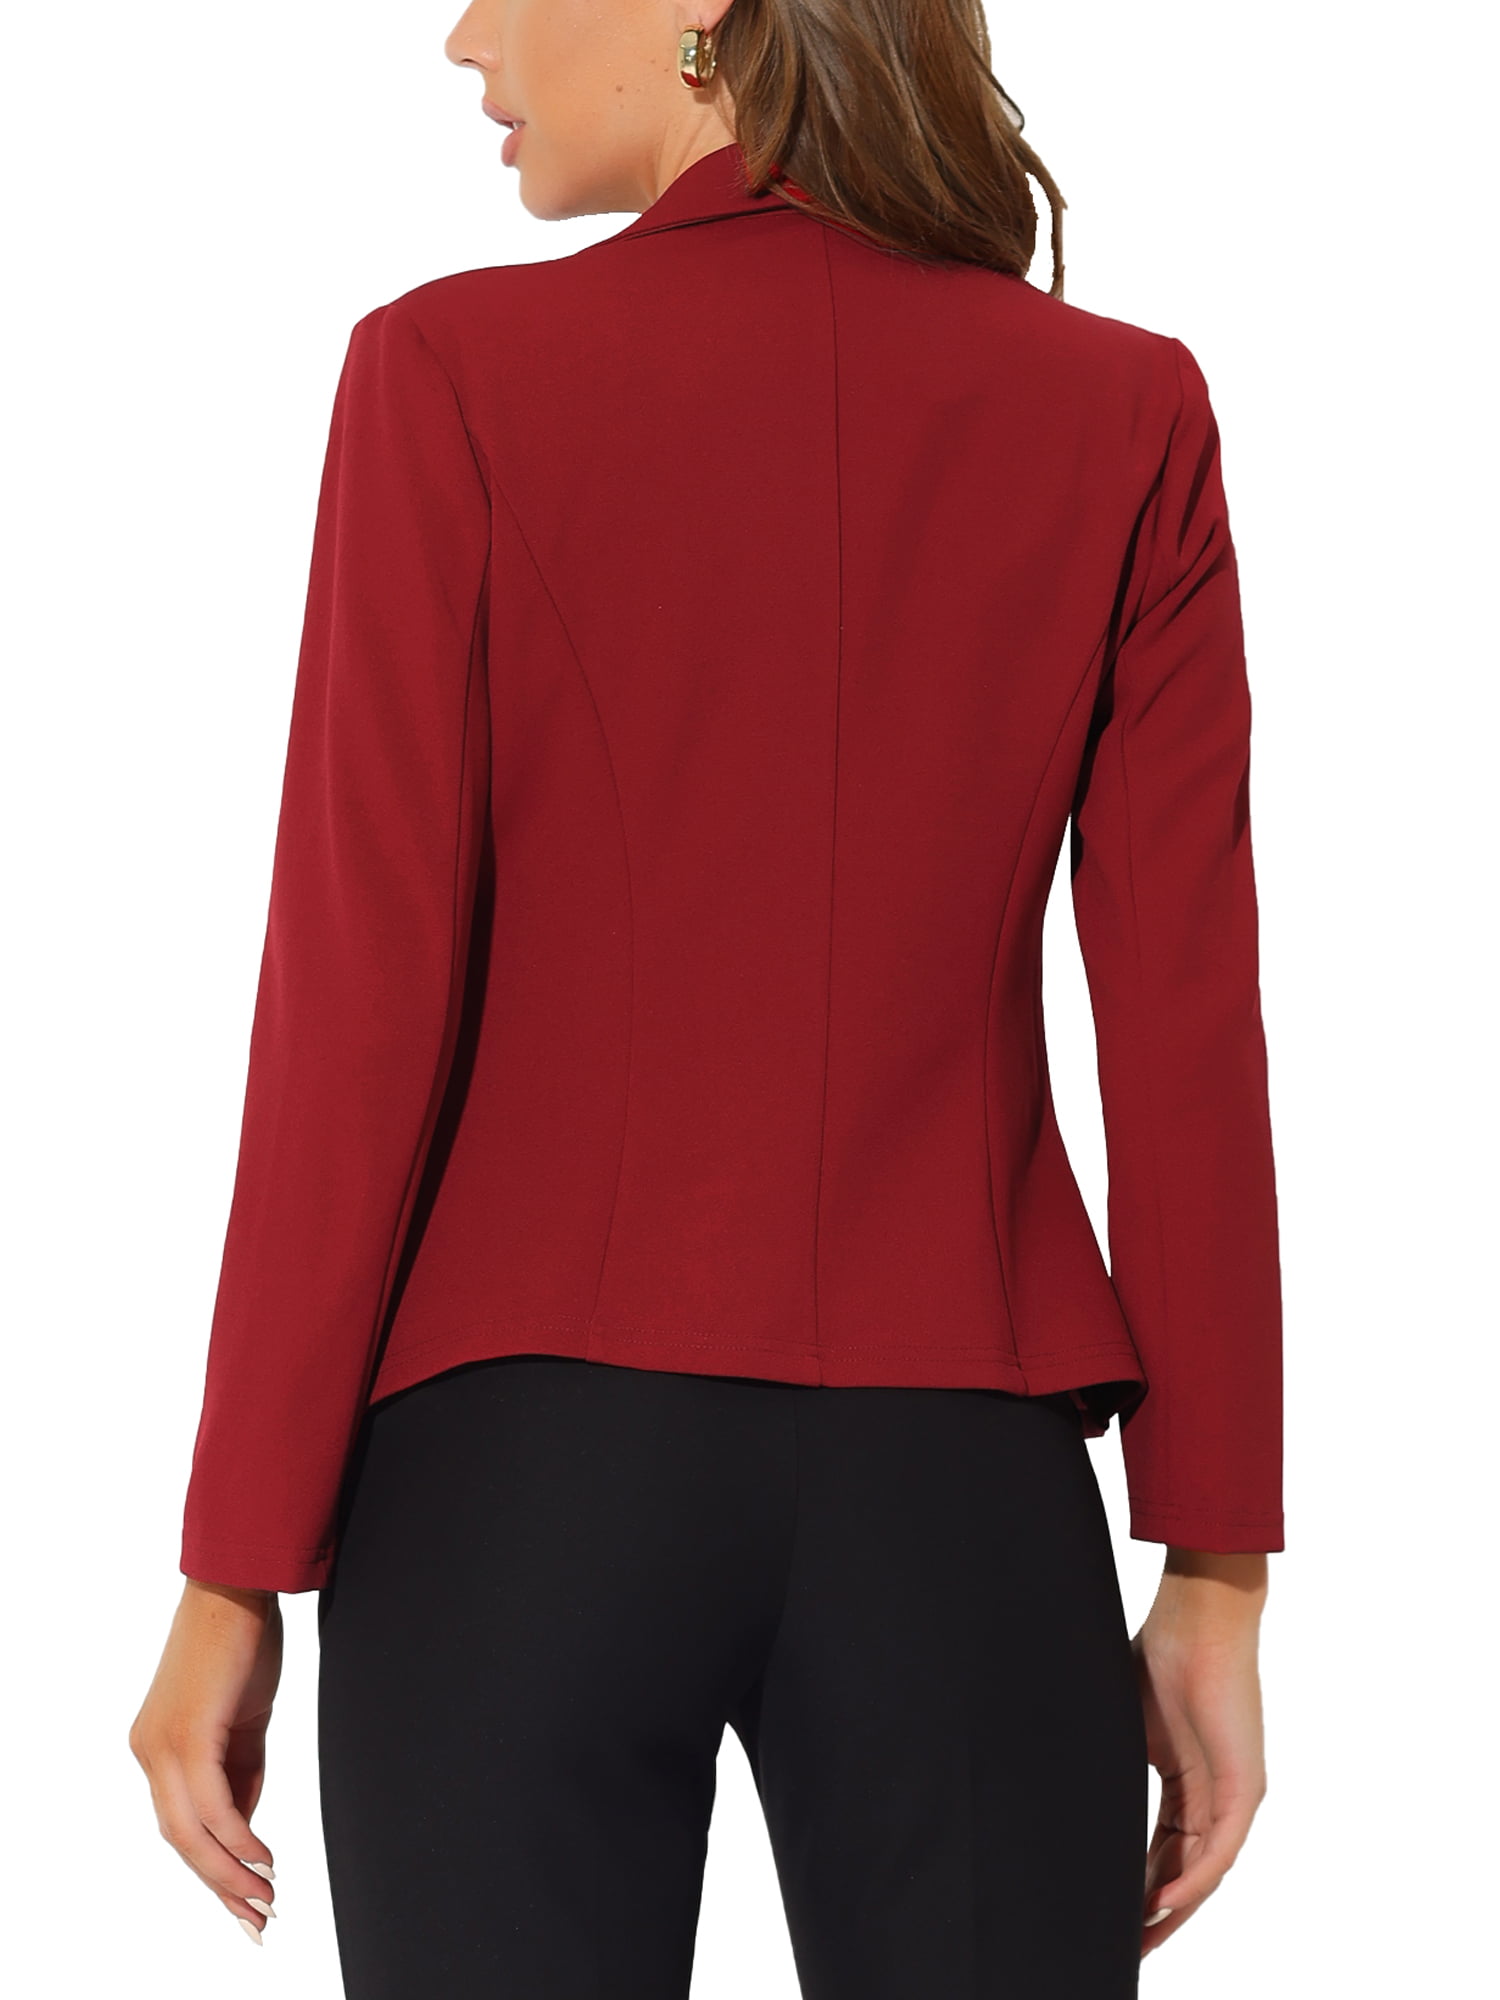 Crush Joseph Banks Commander Unique Bargains Women's Office Work Lapel Collar Stretch Jacket Suit Blazer  - Walmart.com